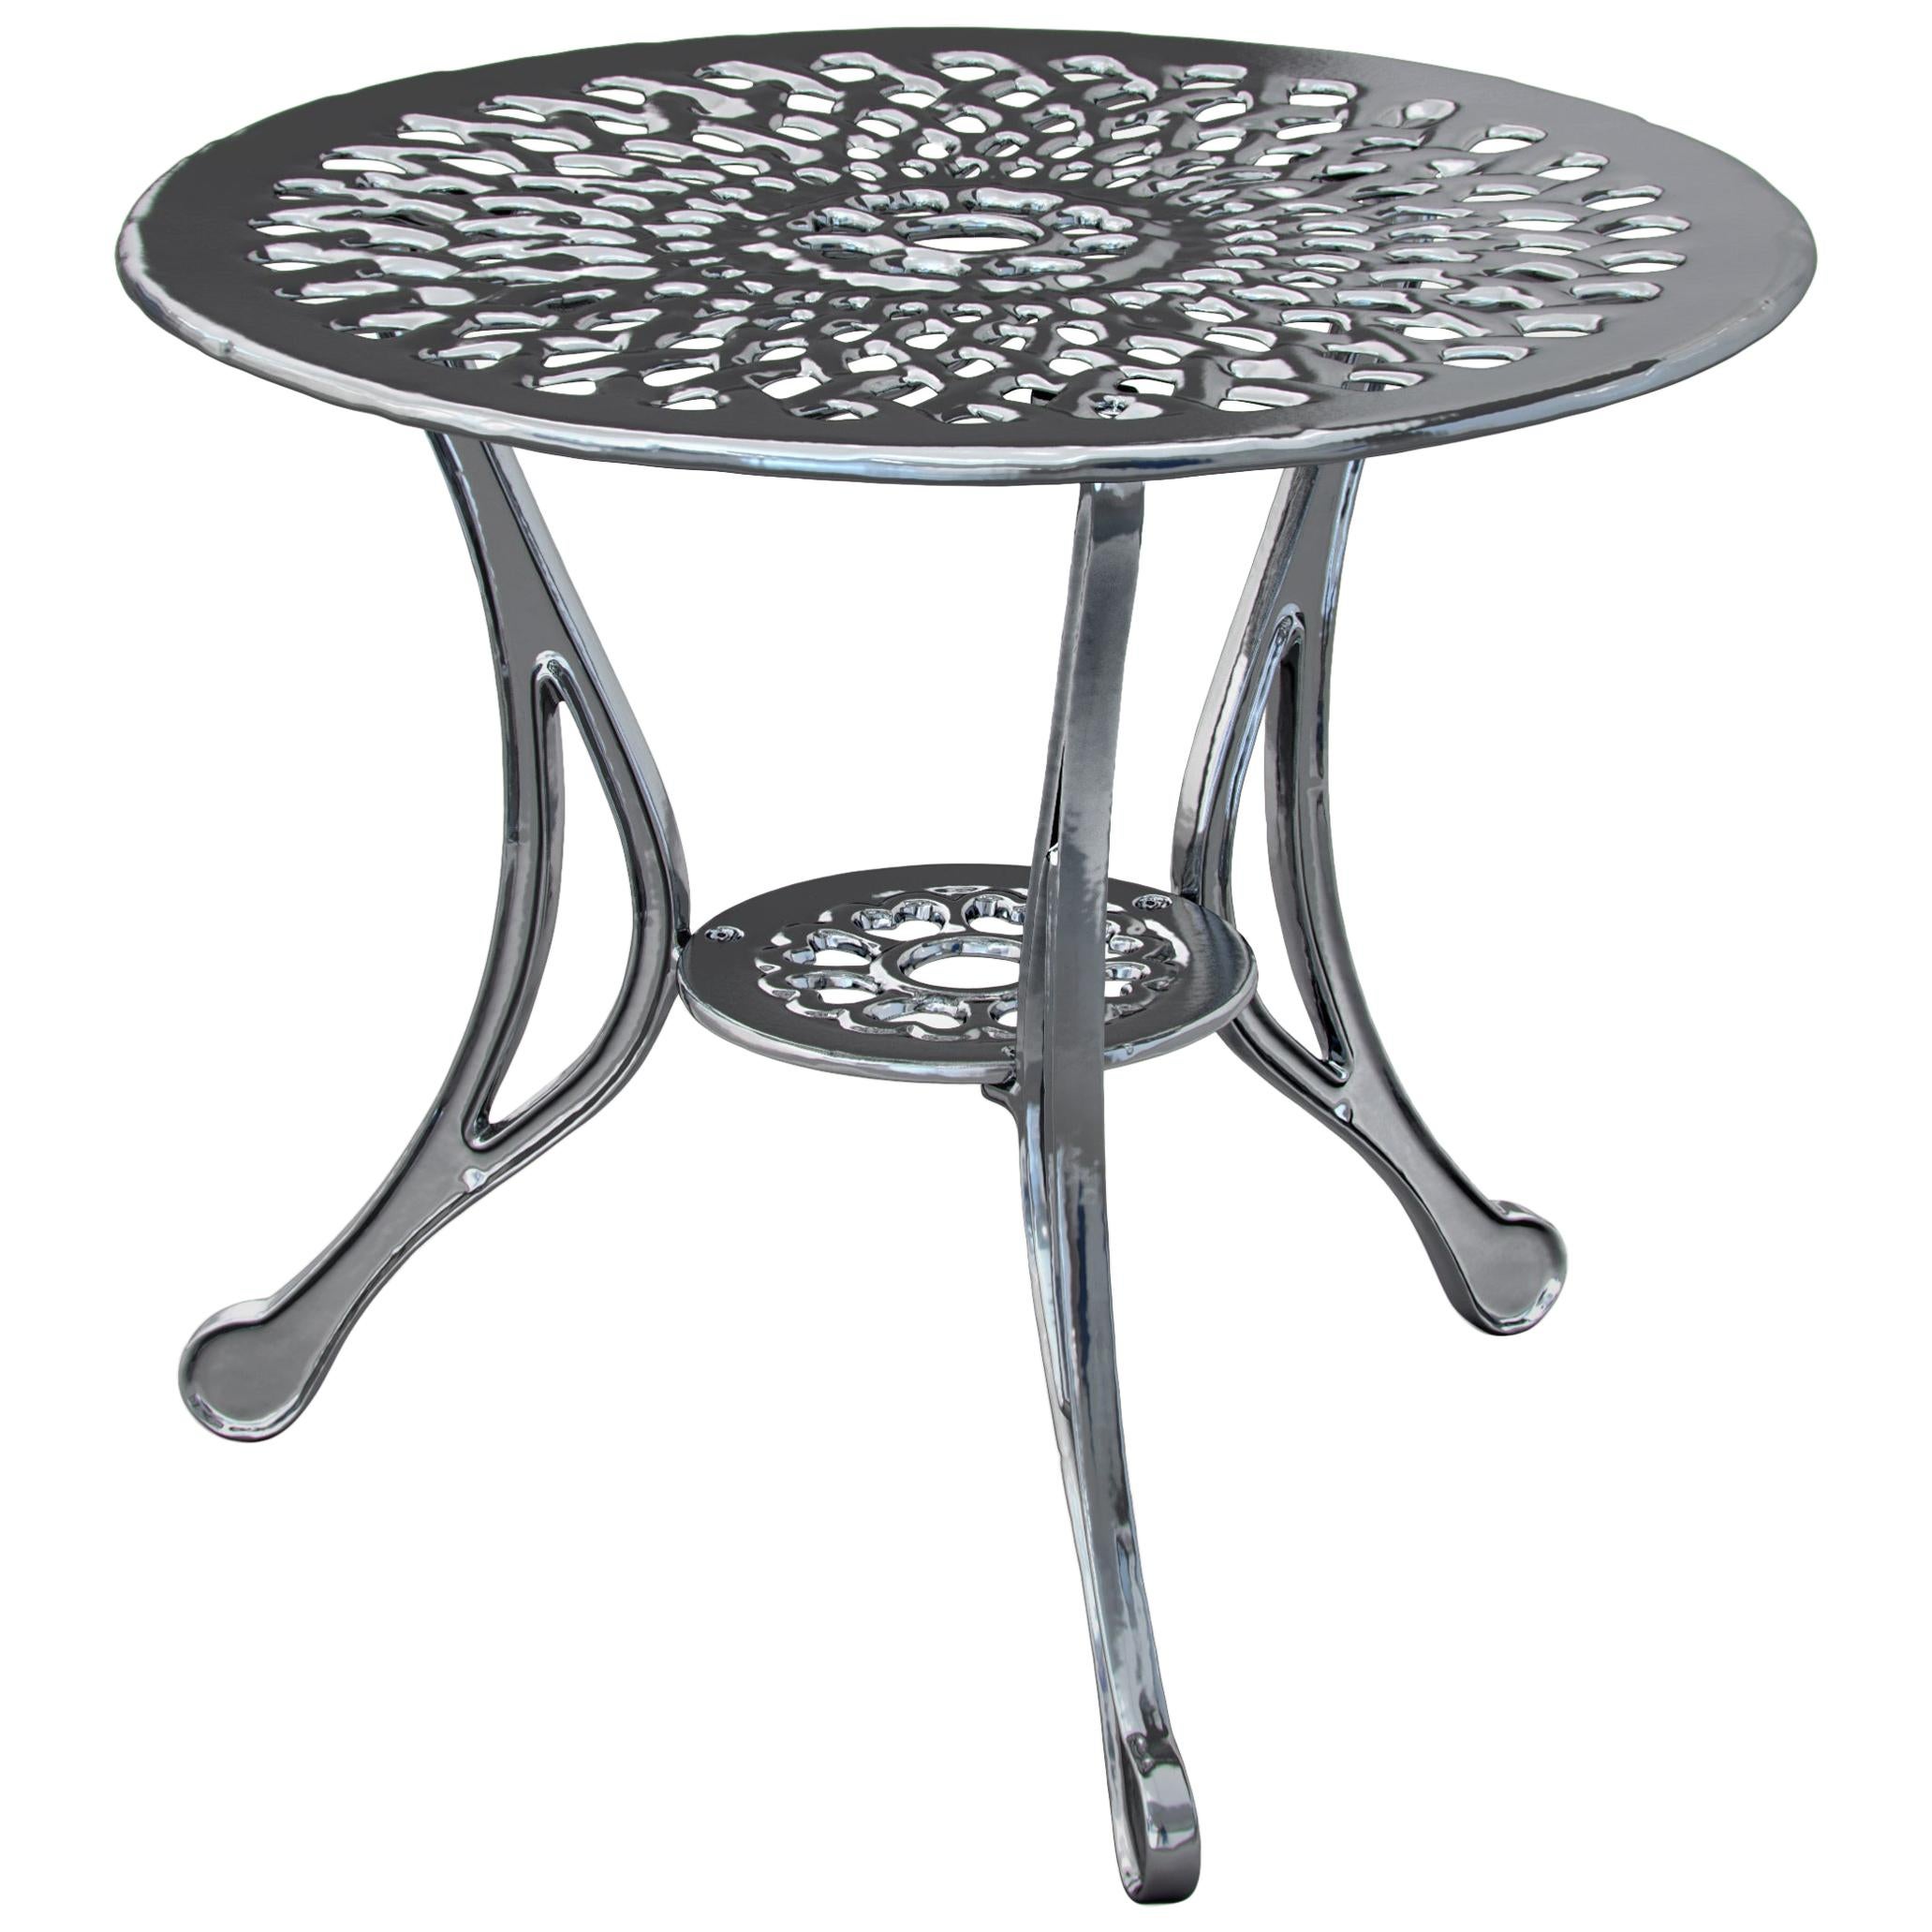 Table d'appoint Varado en aluminium pour extérieur avec finition chromée, fabriquée en Italie